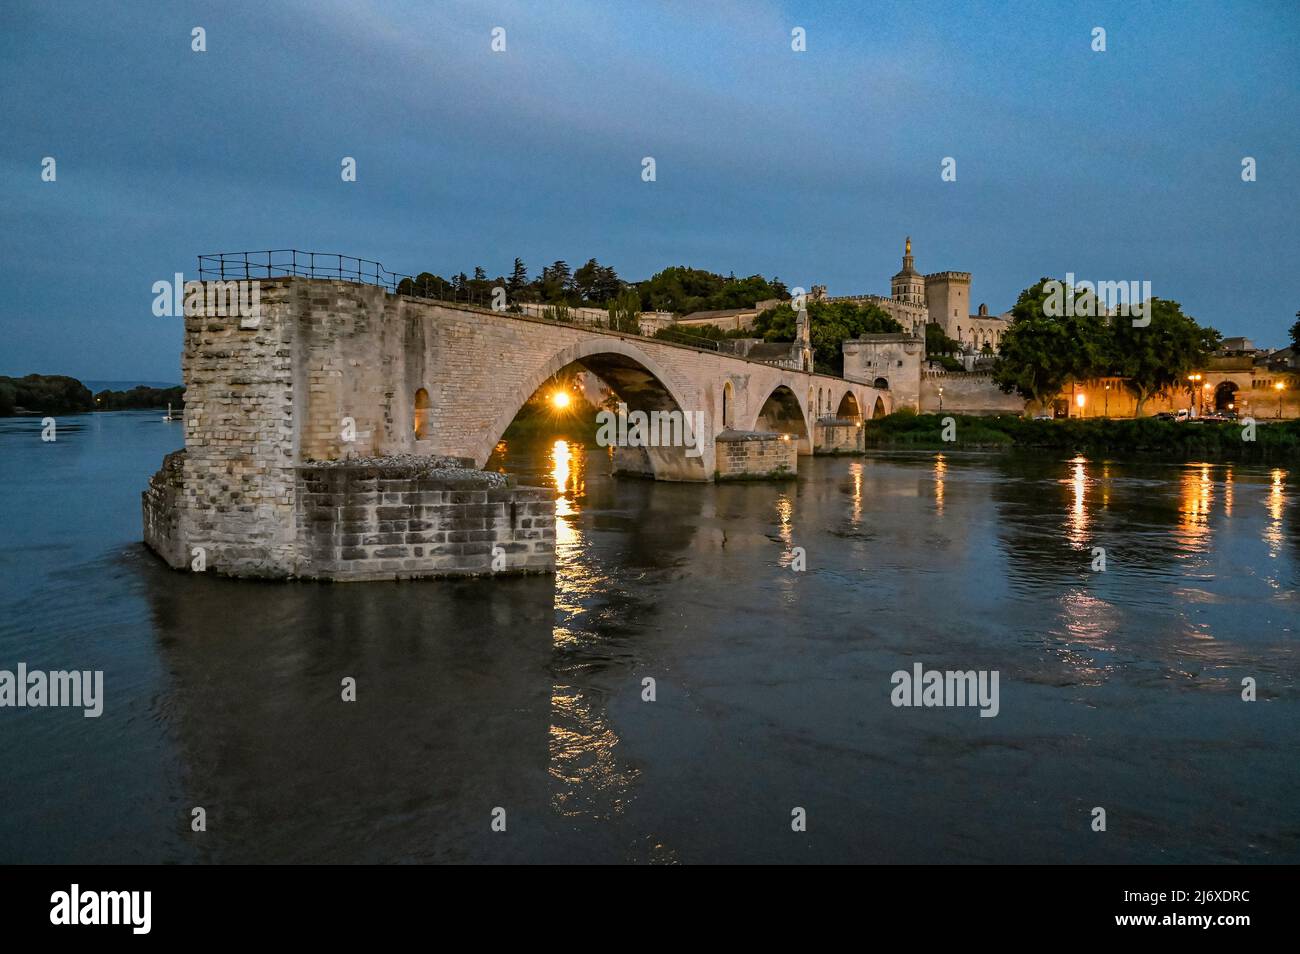 Patrimonio de la Humanidad Pont Bénézet visto desde el río Rhône, Aviñón, Francia Foto de stock